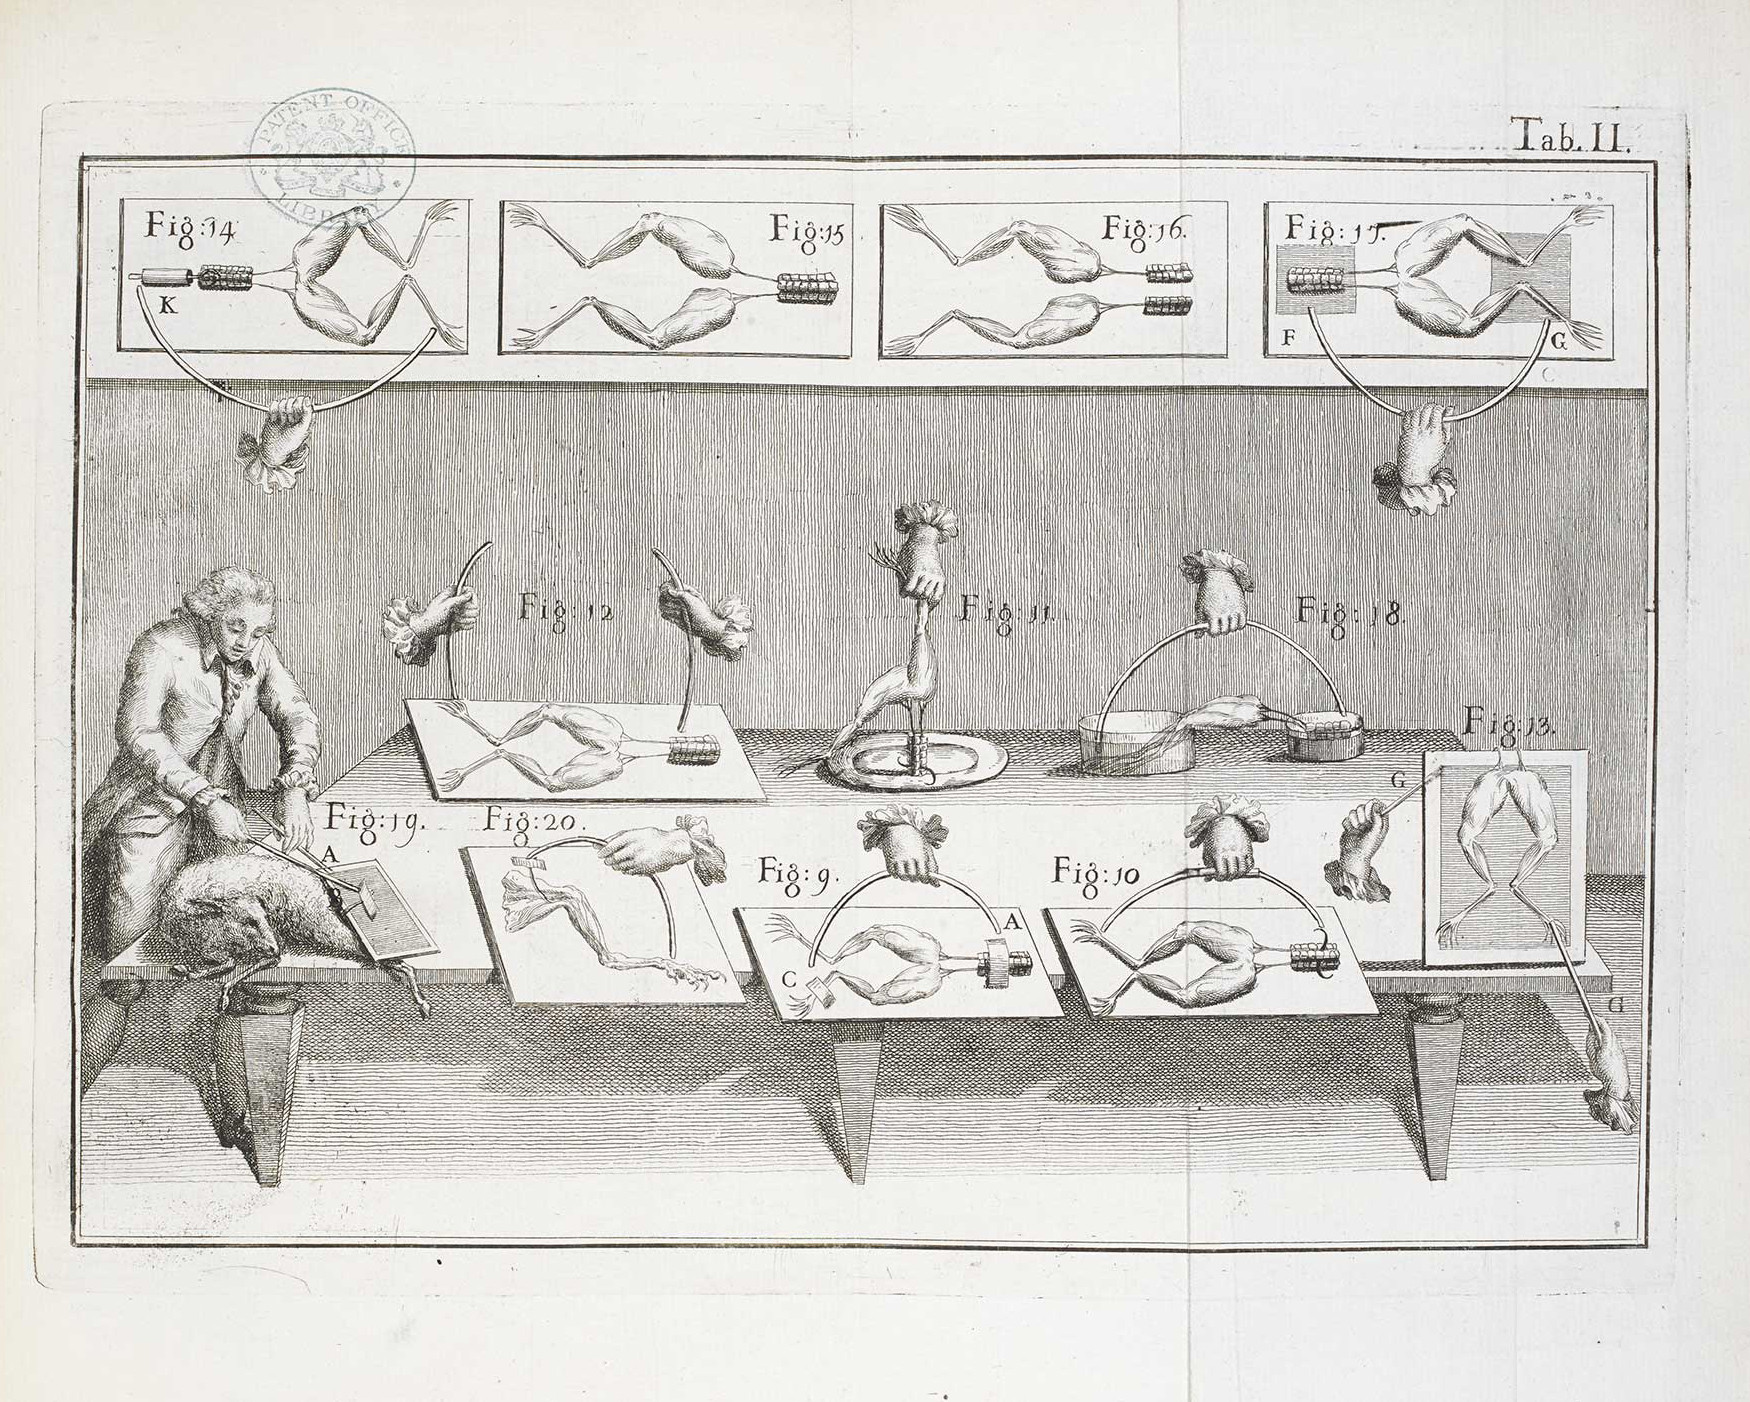 Ilustración sobre los experimentos de Galvani con ranas.